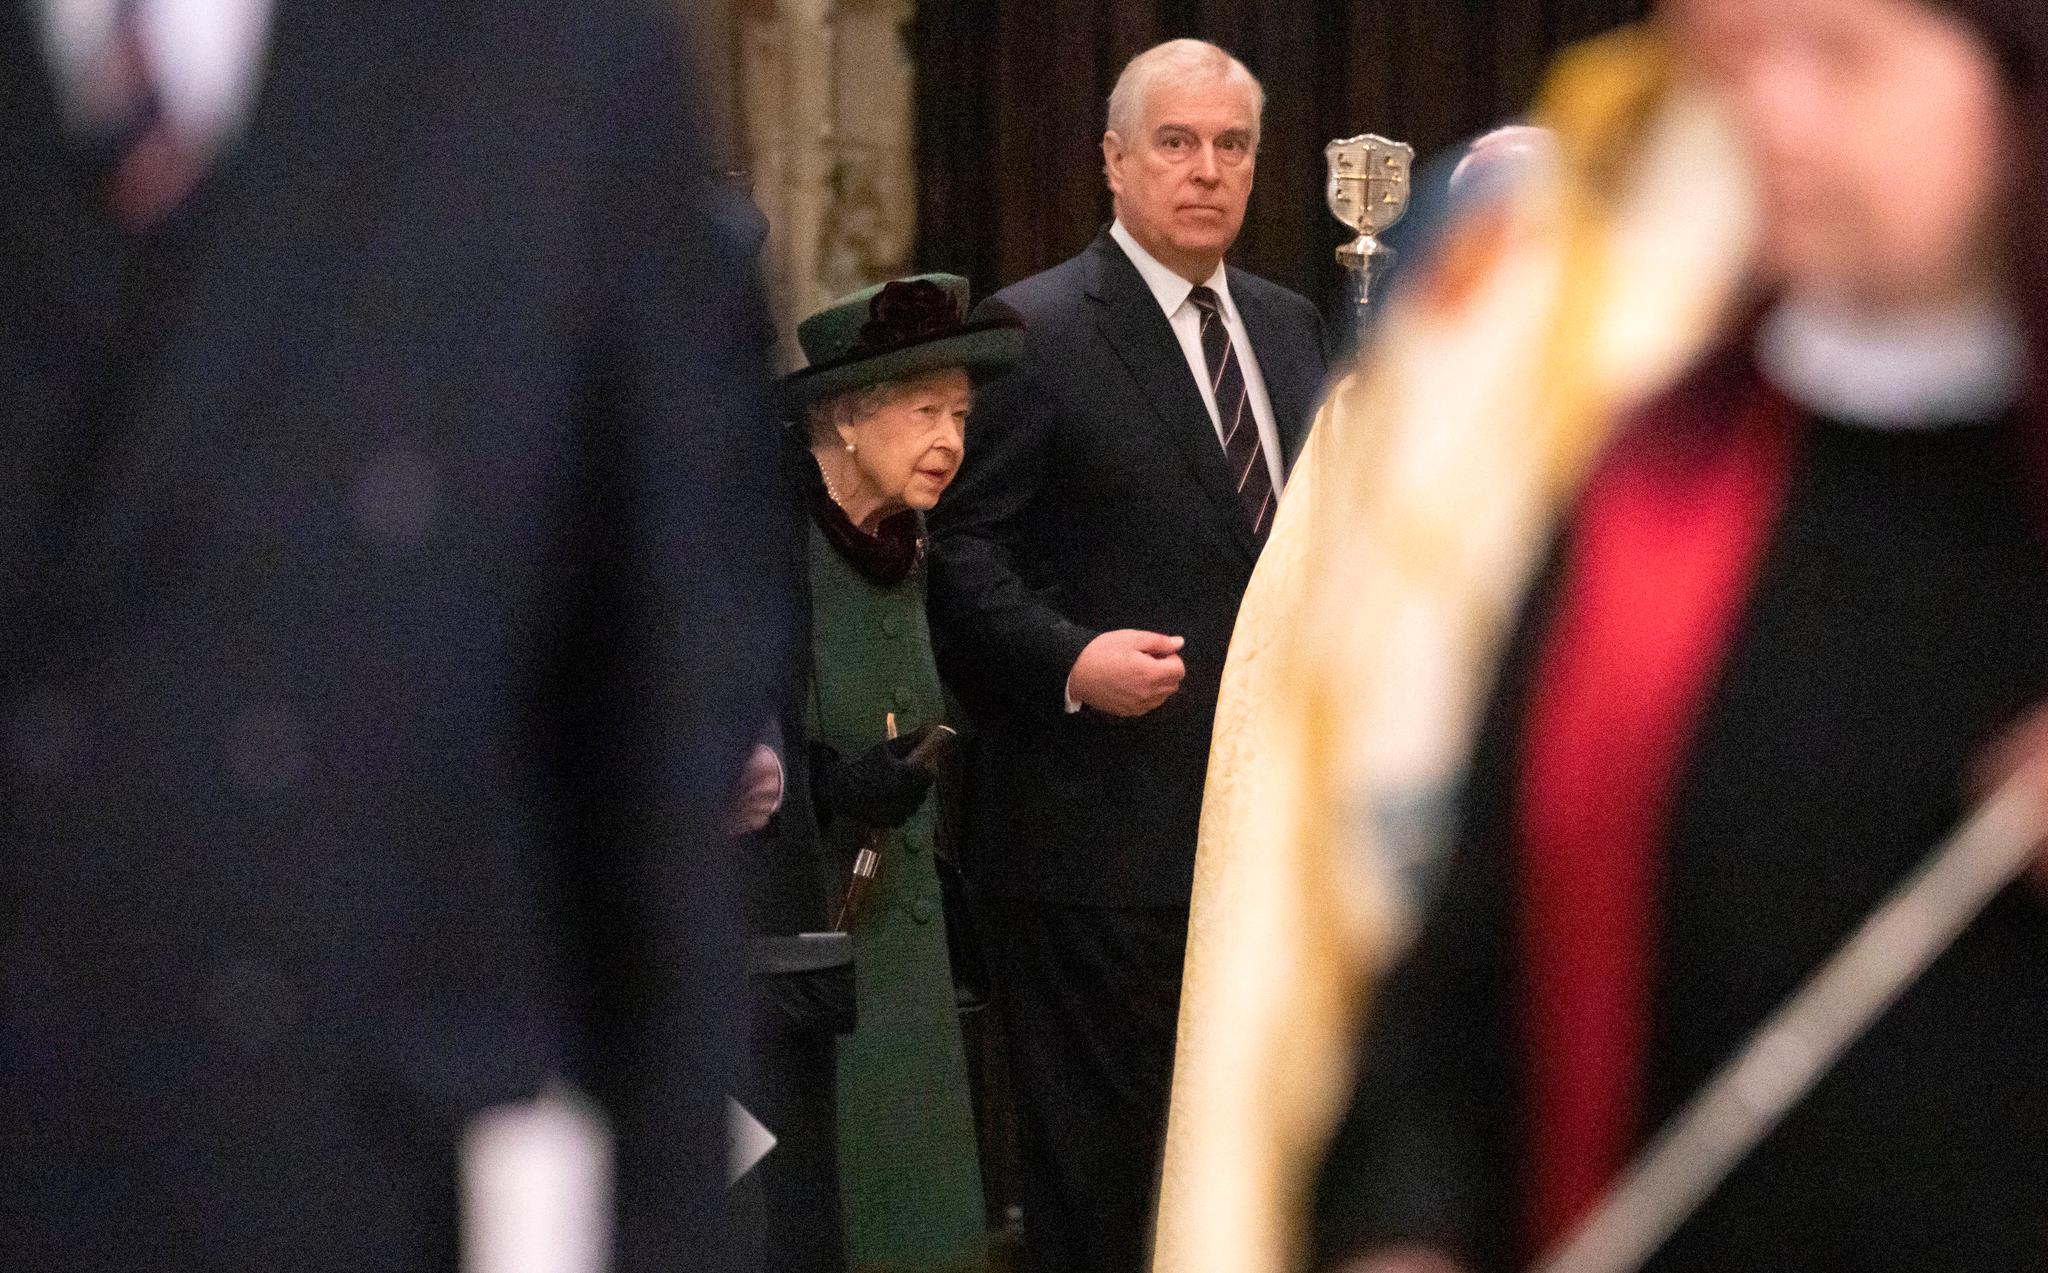 Queen Elizabeth attends first public event in months